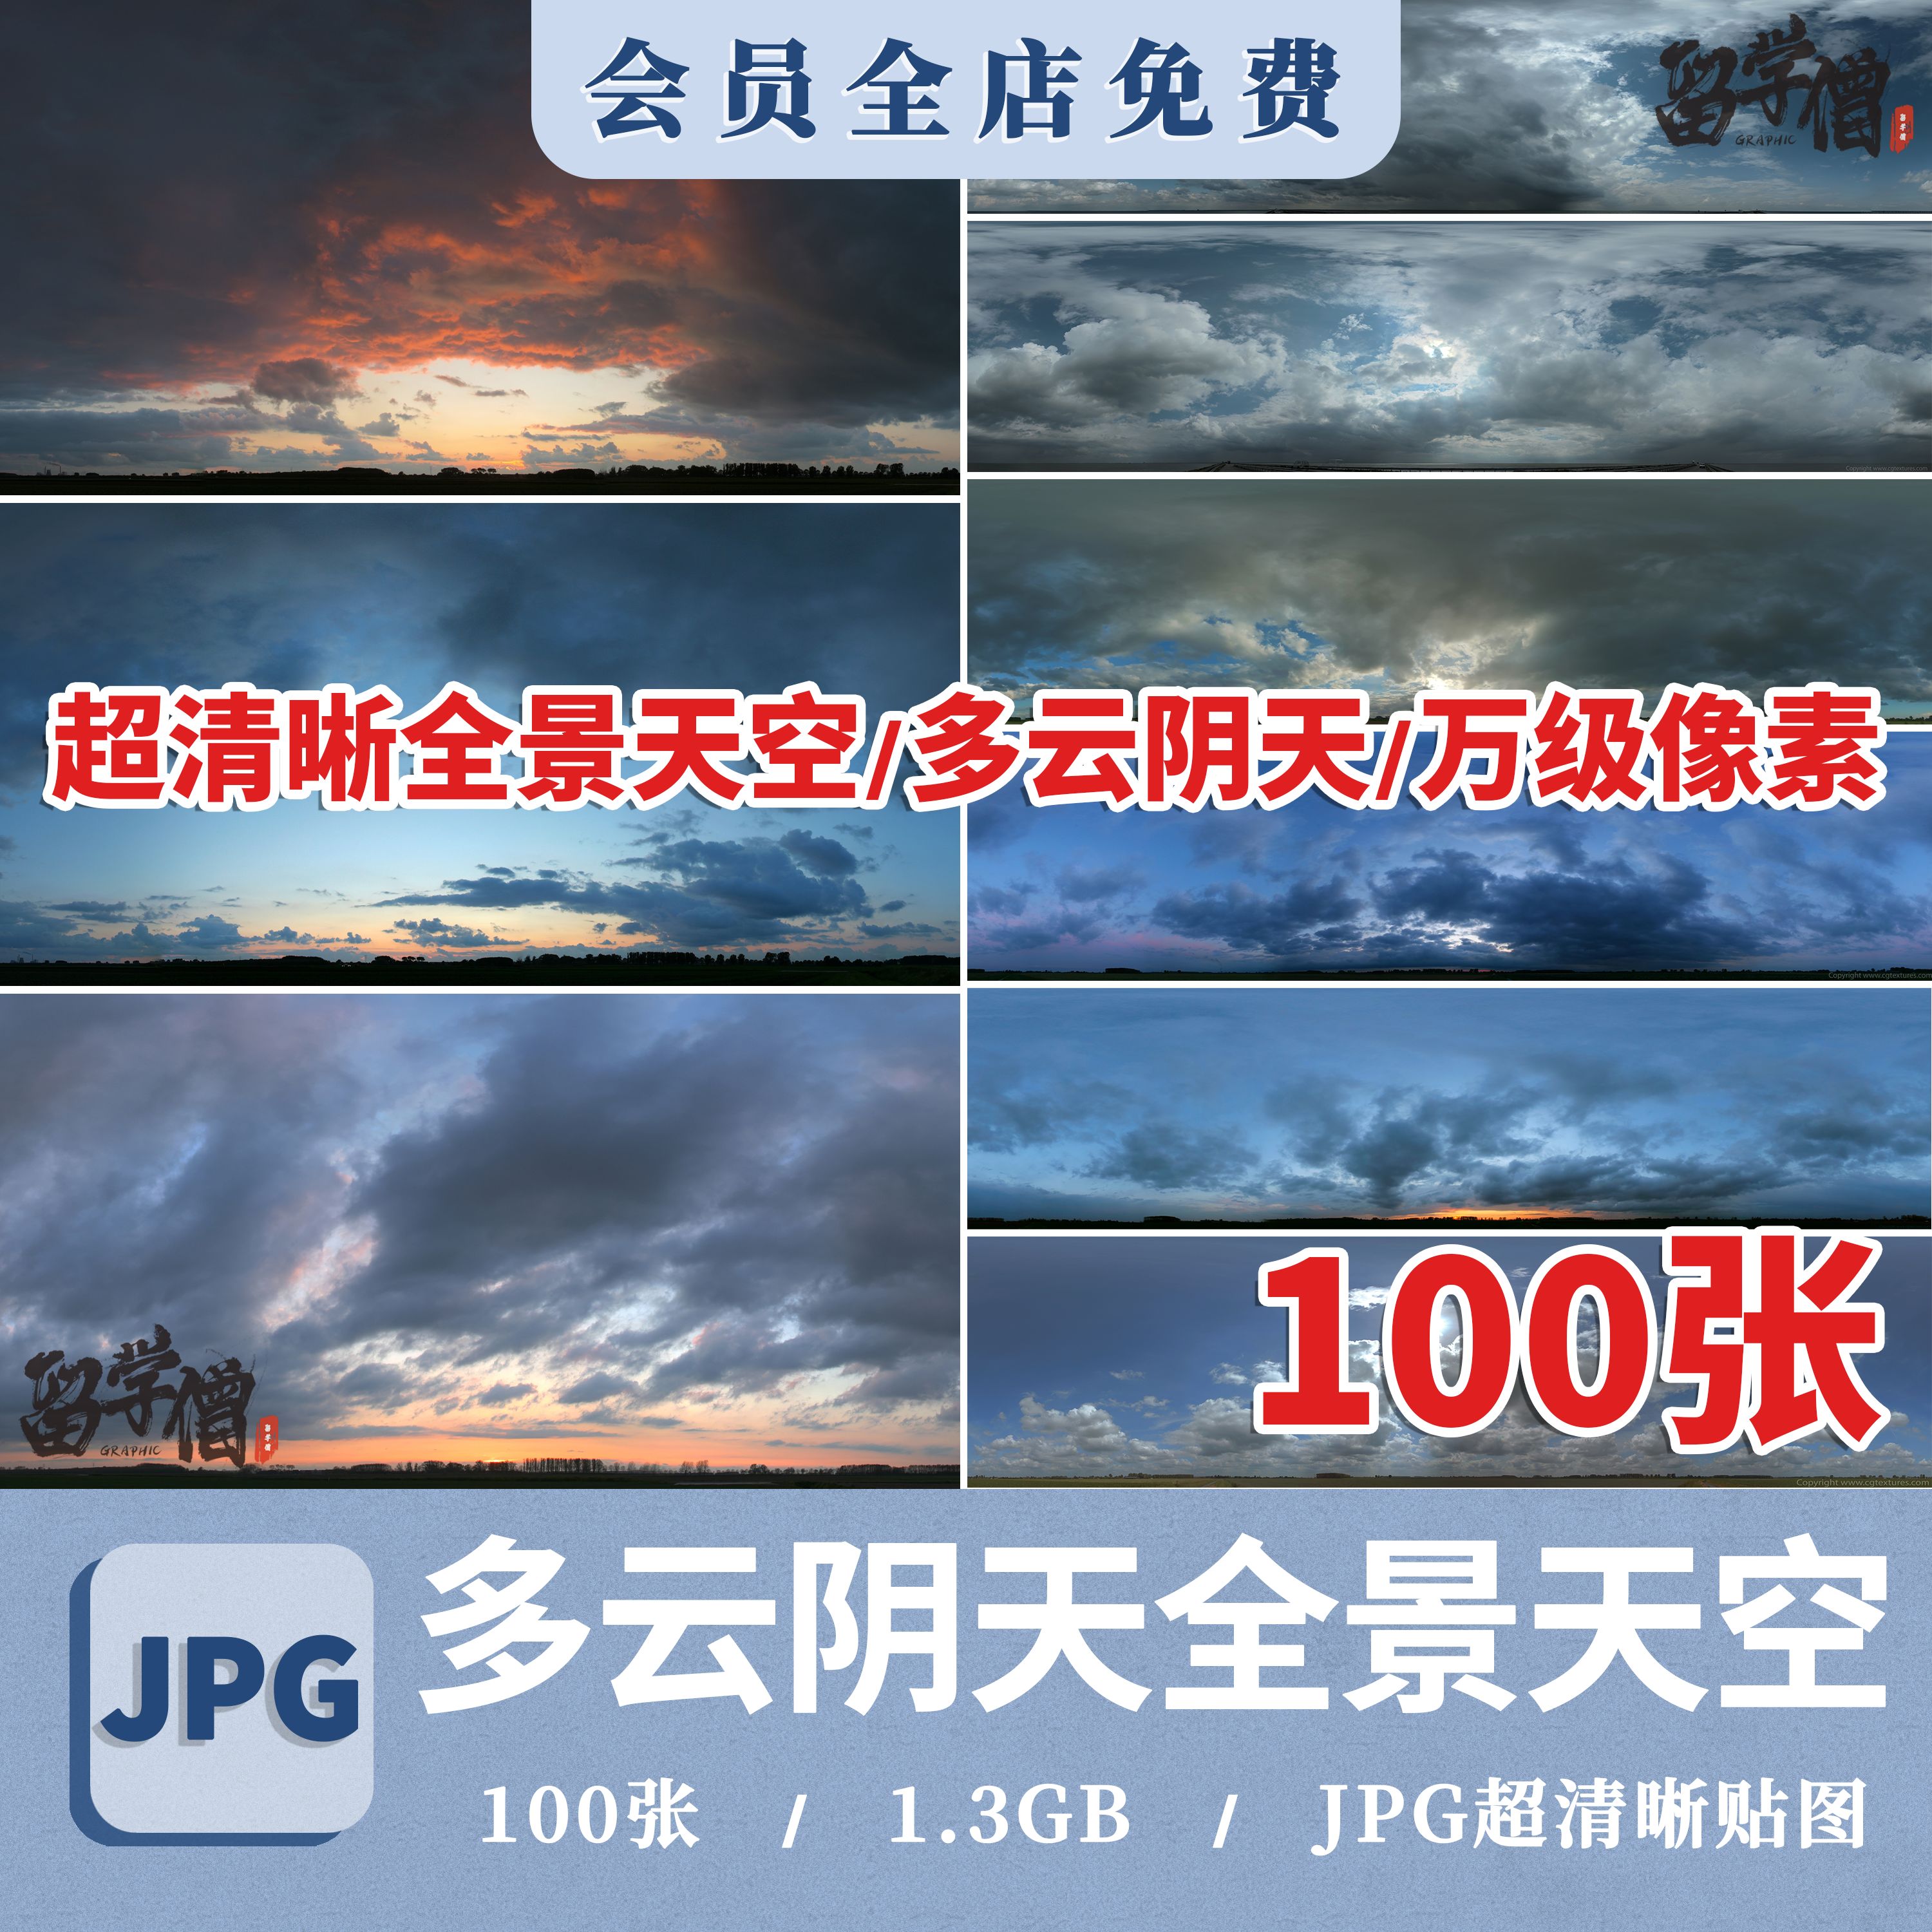 多云阴天全景天空超清图片高分辨率超高清天空贴图背景素材JPG